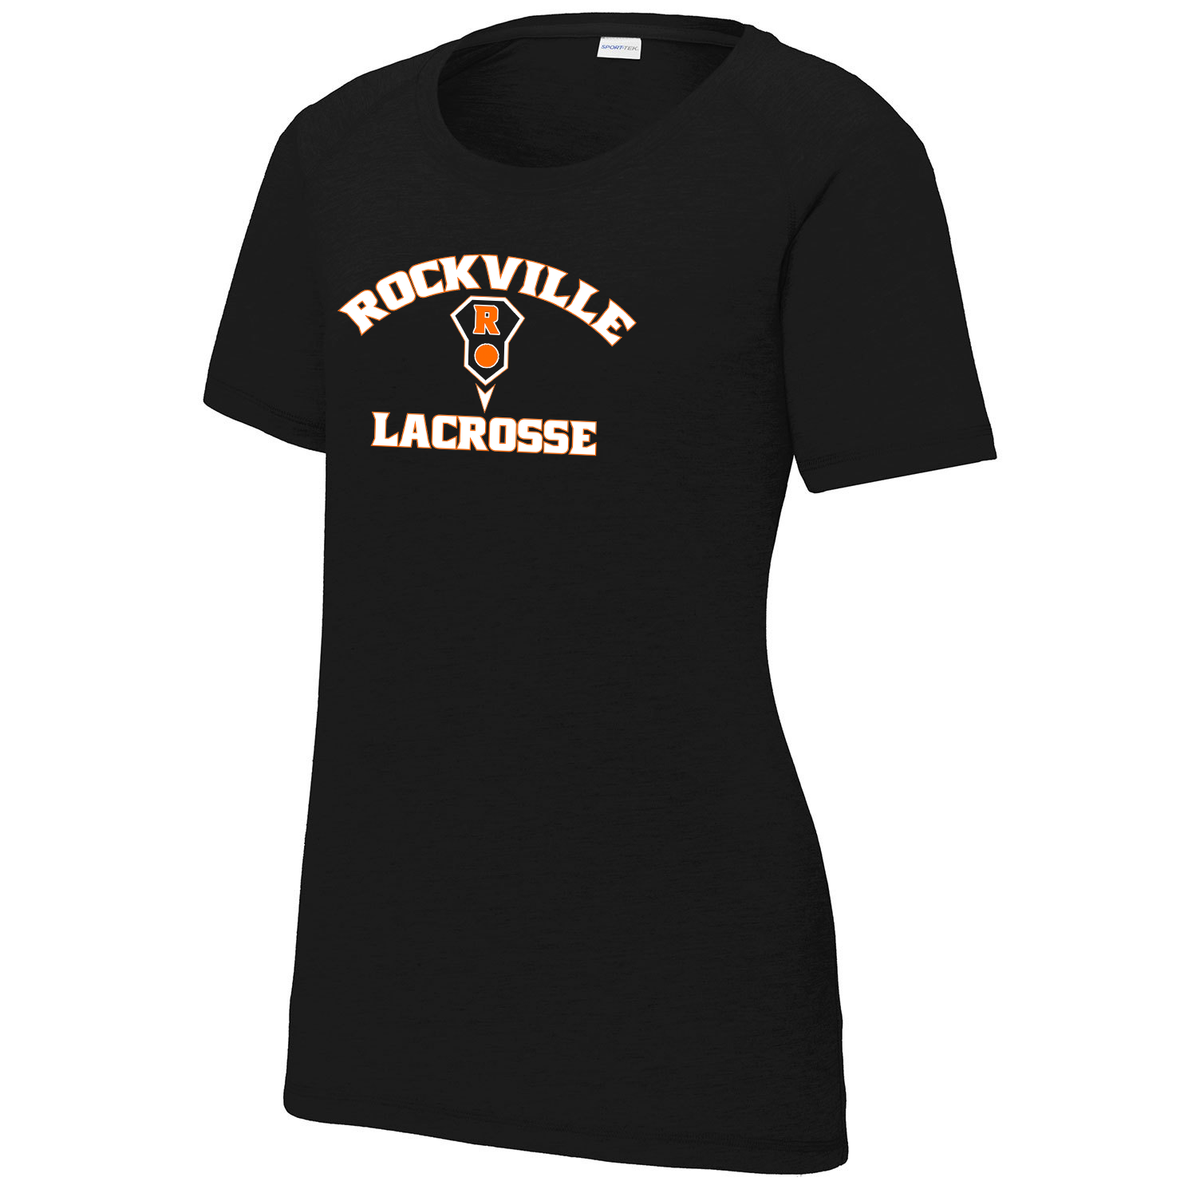 Rockville HS Girls Lacrosse Women's Raglan CottonTouch